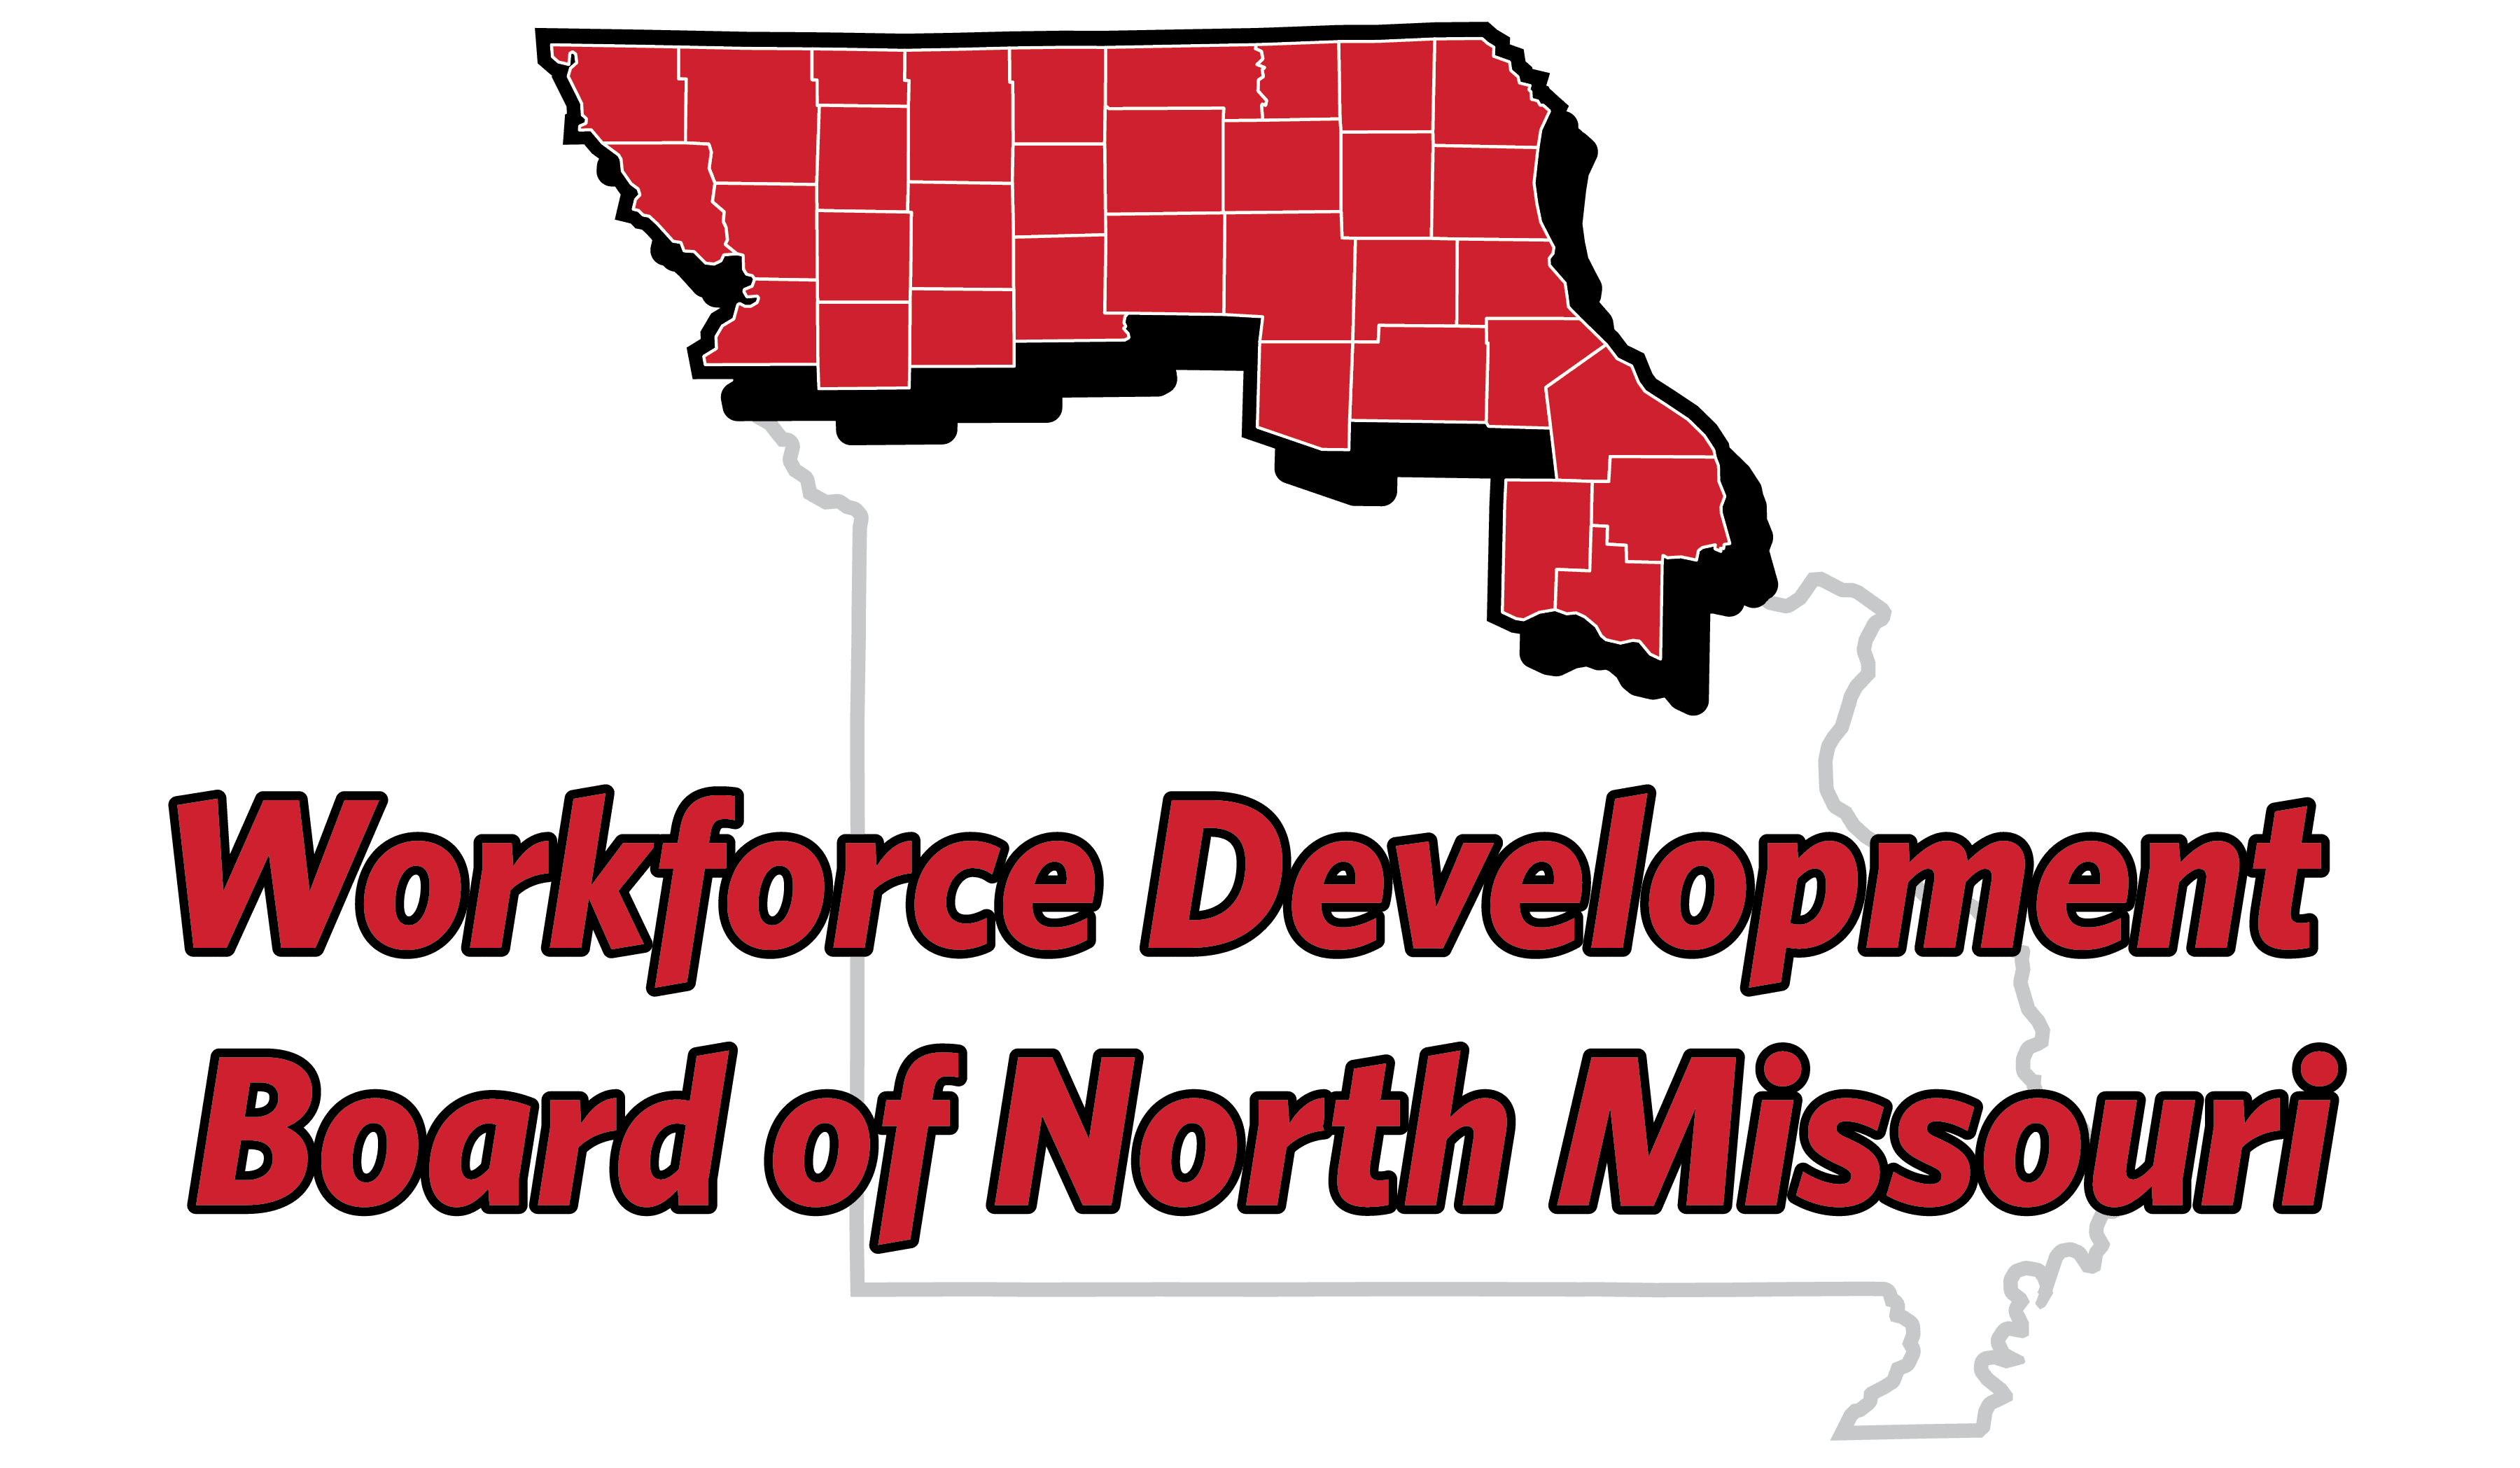 Workforce Development Board of North Missouri